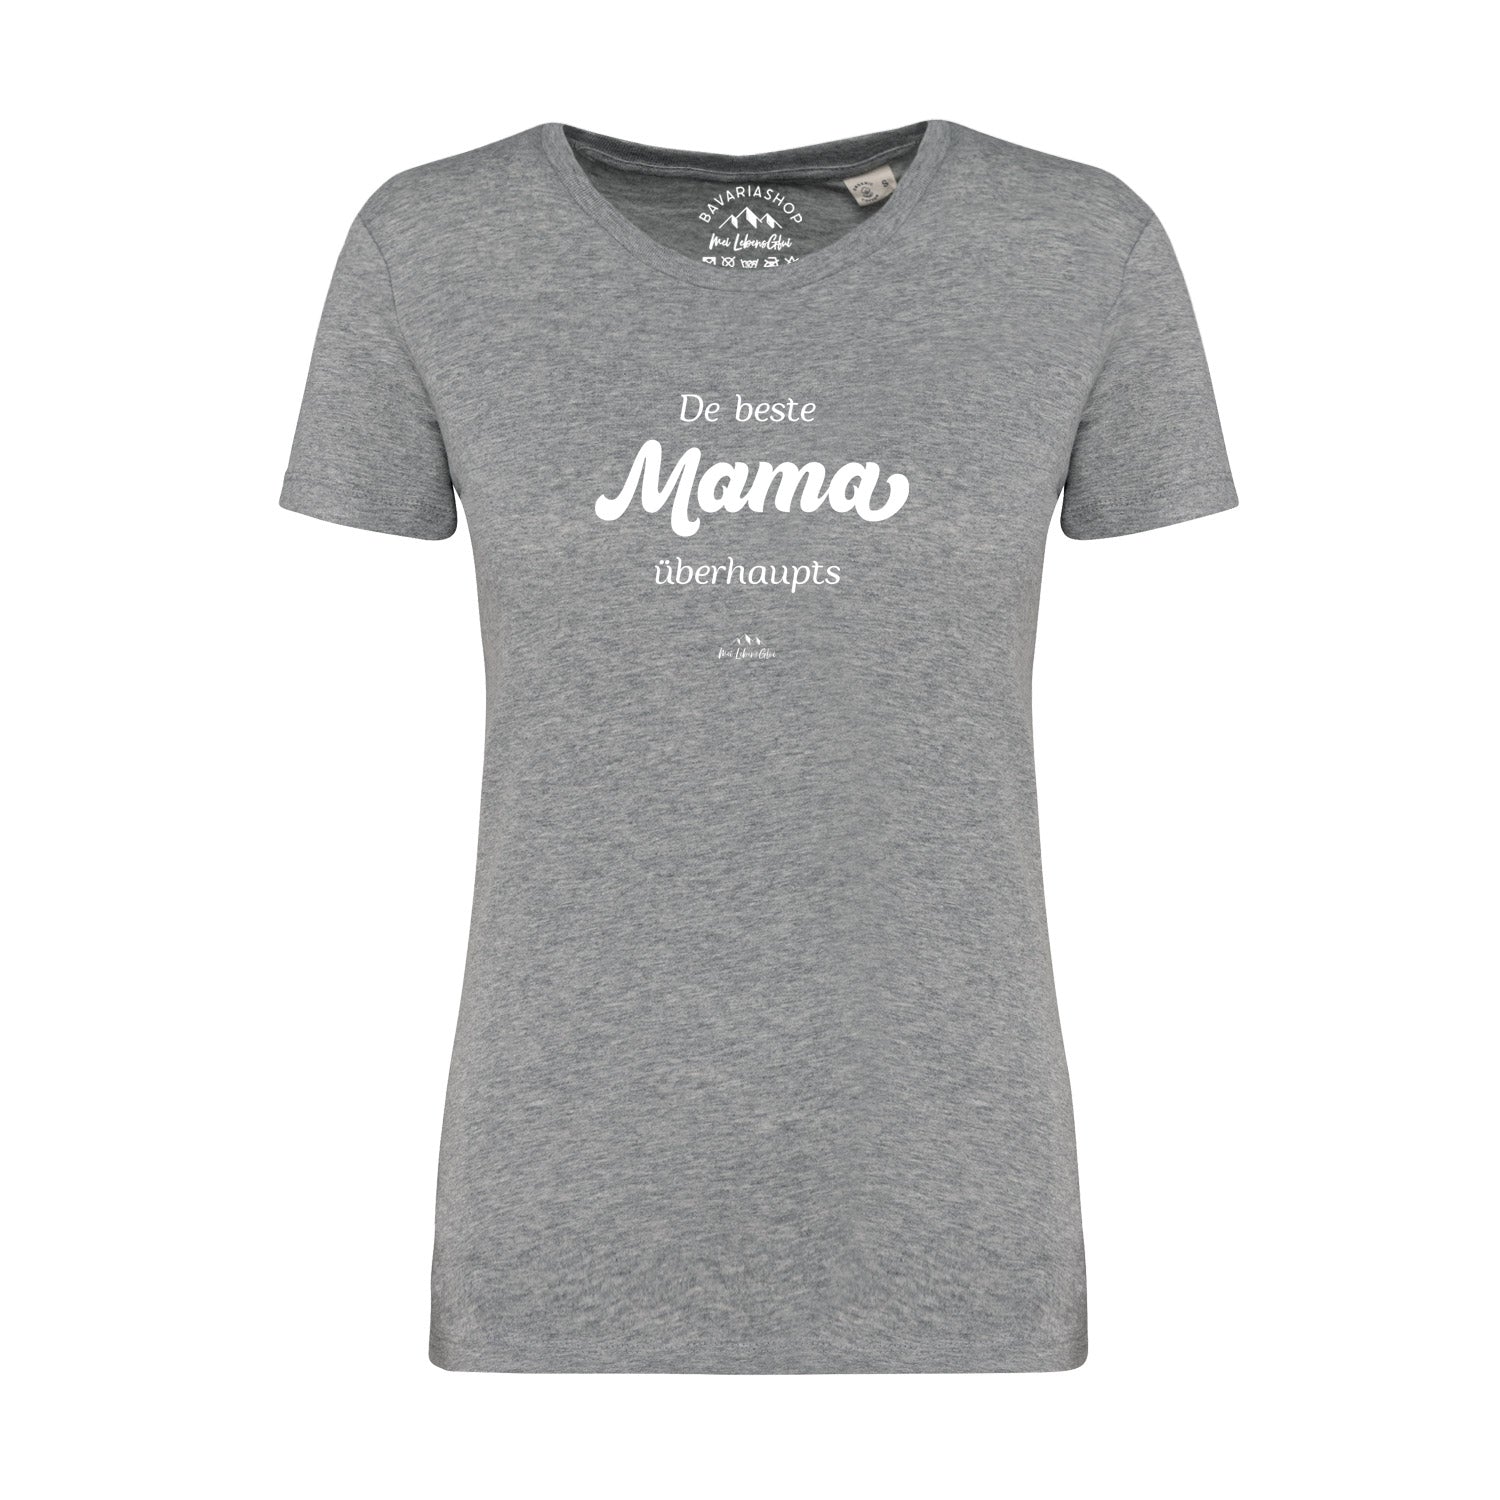 Damen T-Shirt "De beste Mama übahaupts"